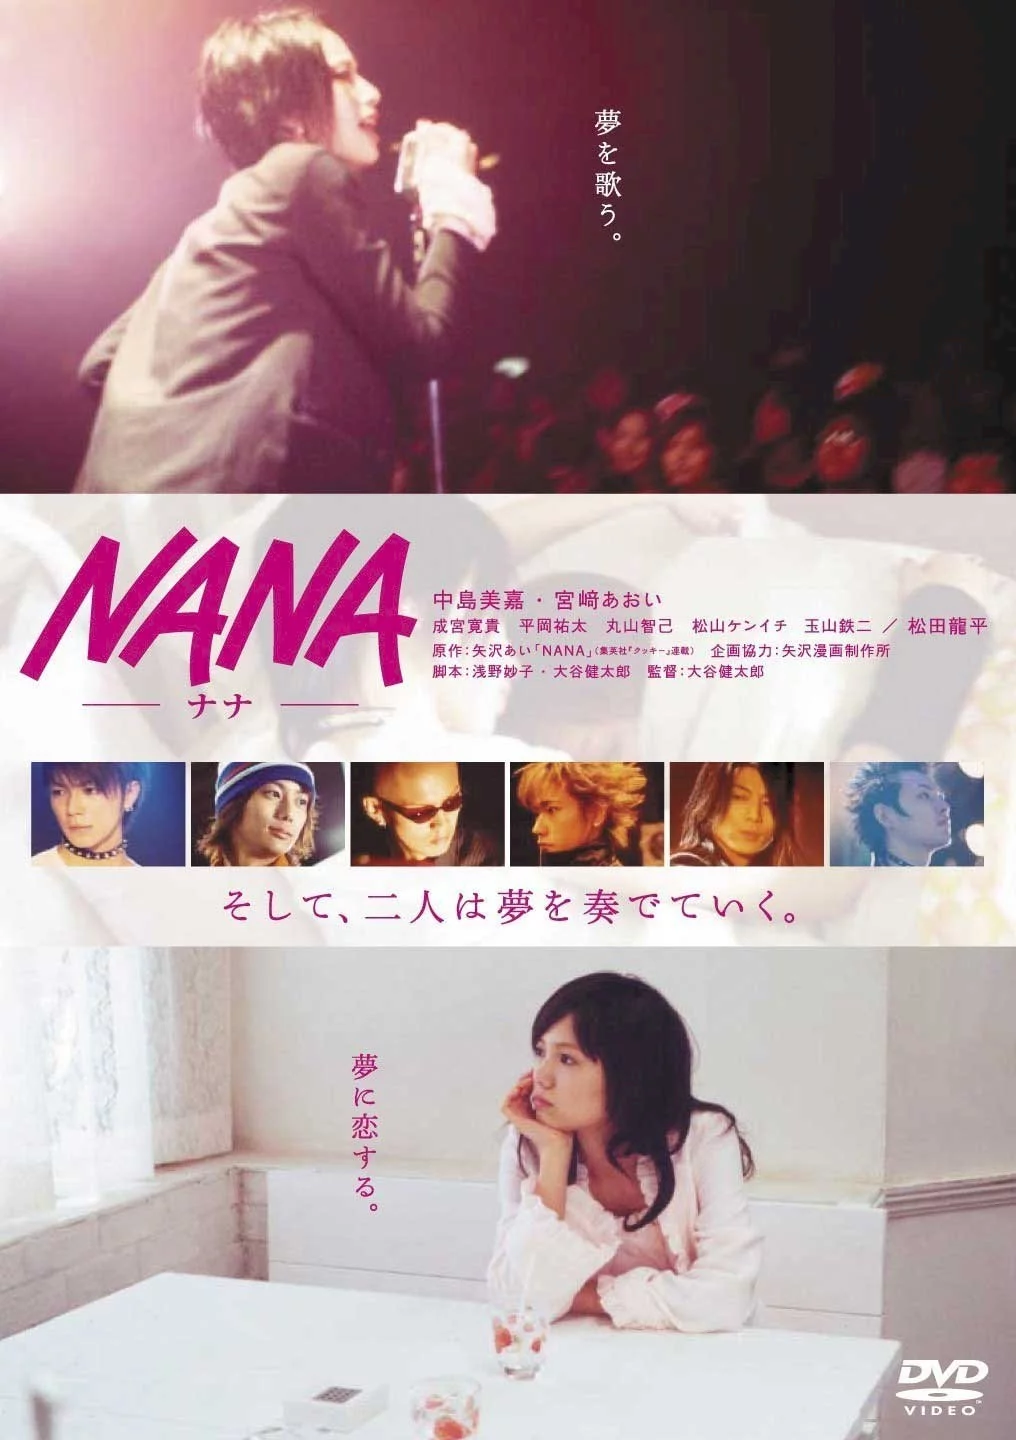 Photo 1 du film : Nana